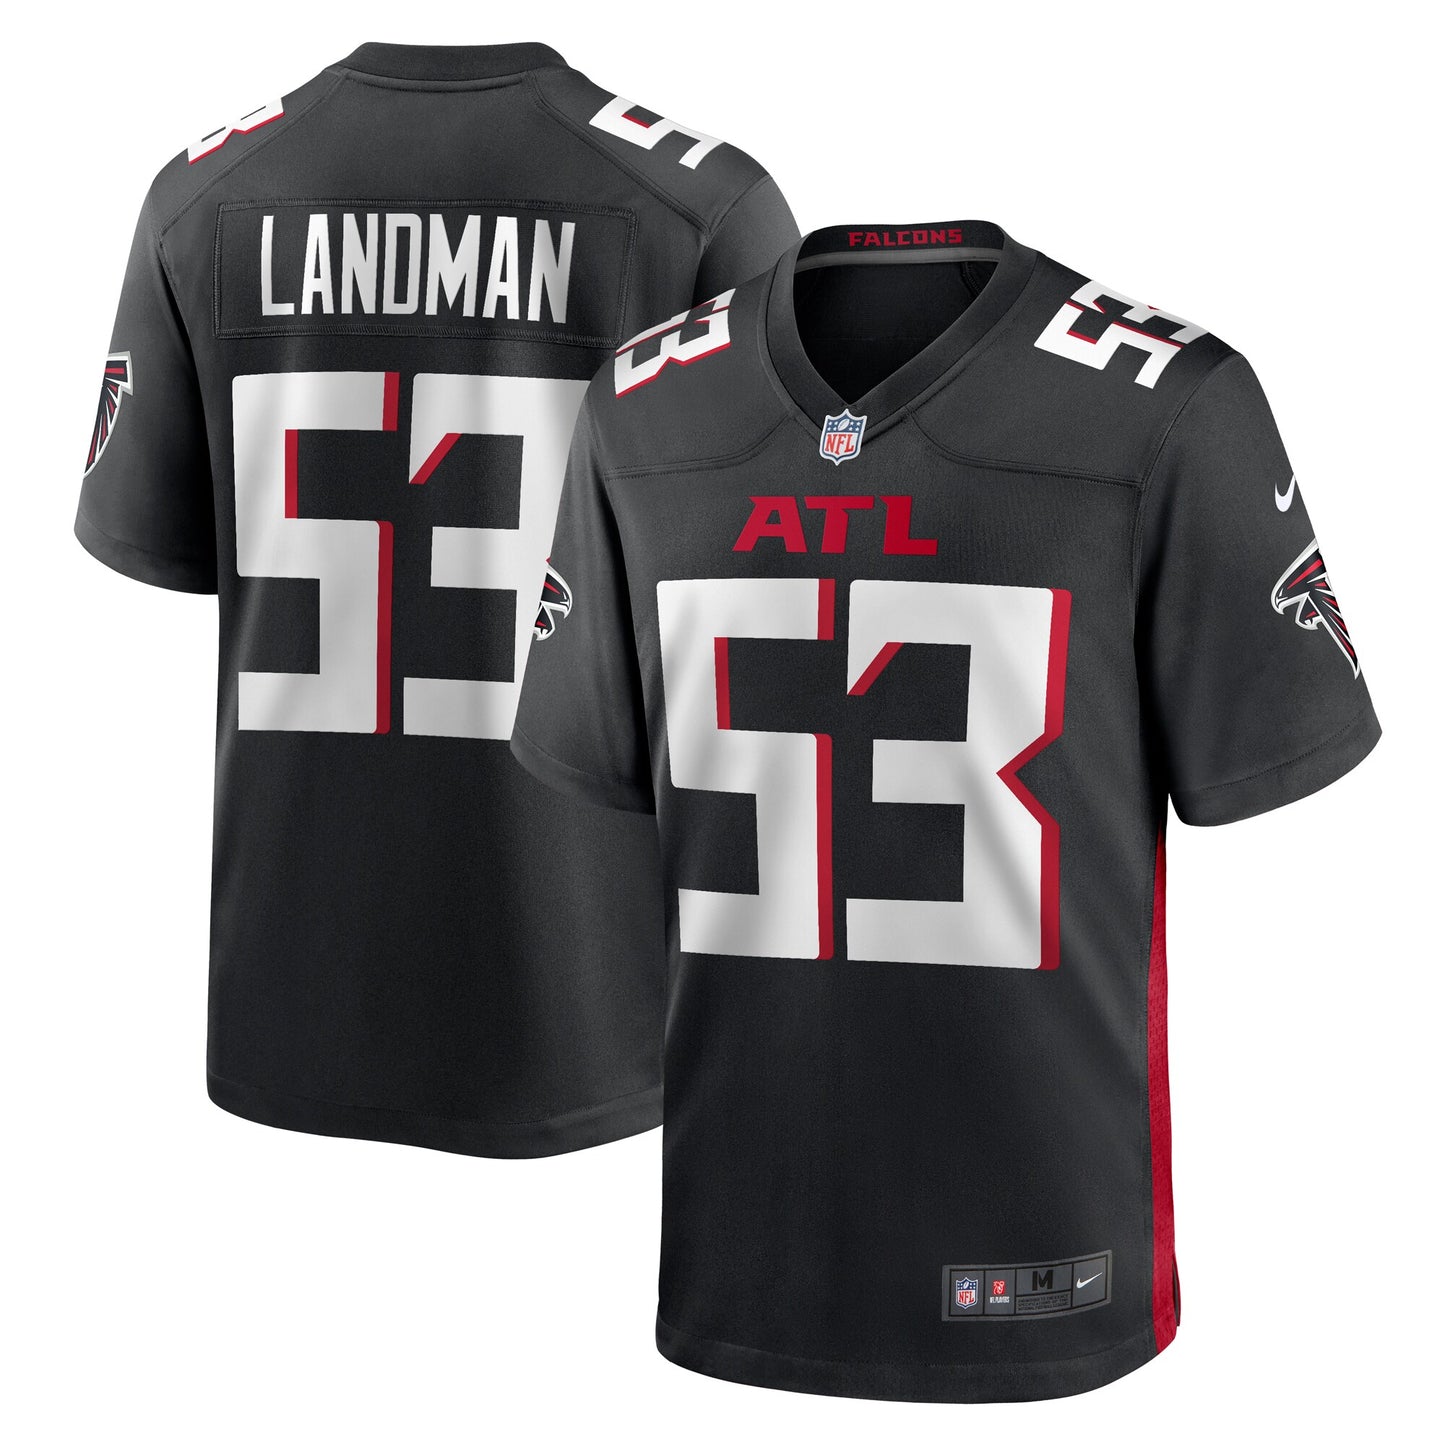 Nate Landman Atlanta Falcons Nike Team Game Jersey - Black